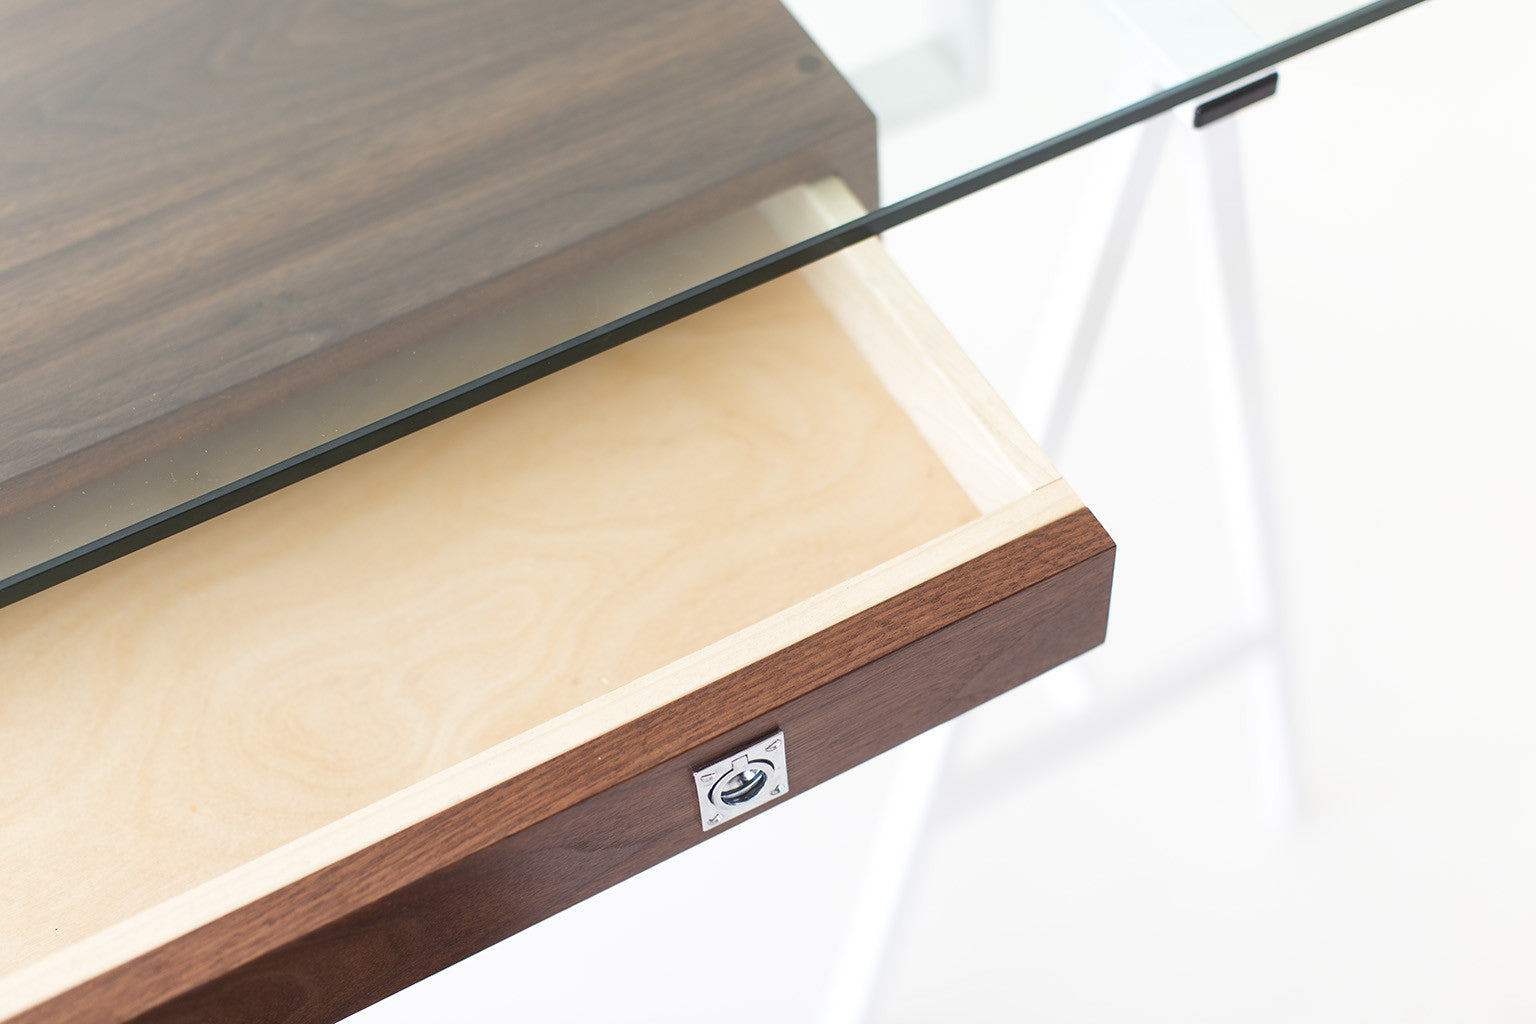 Modern Desk for Bertu Home - 04111601